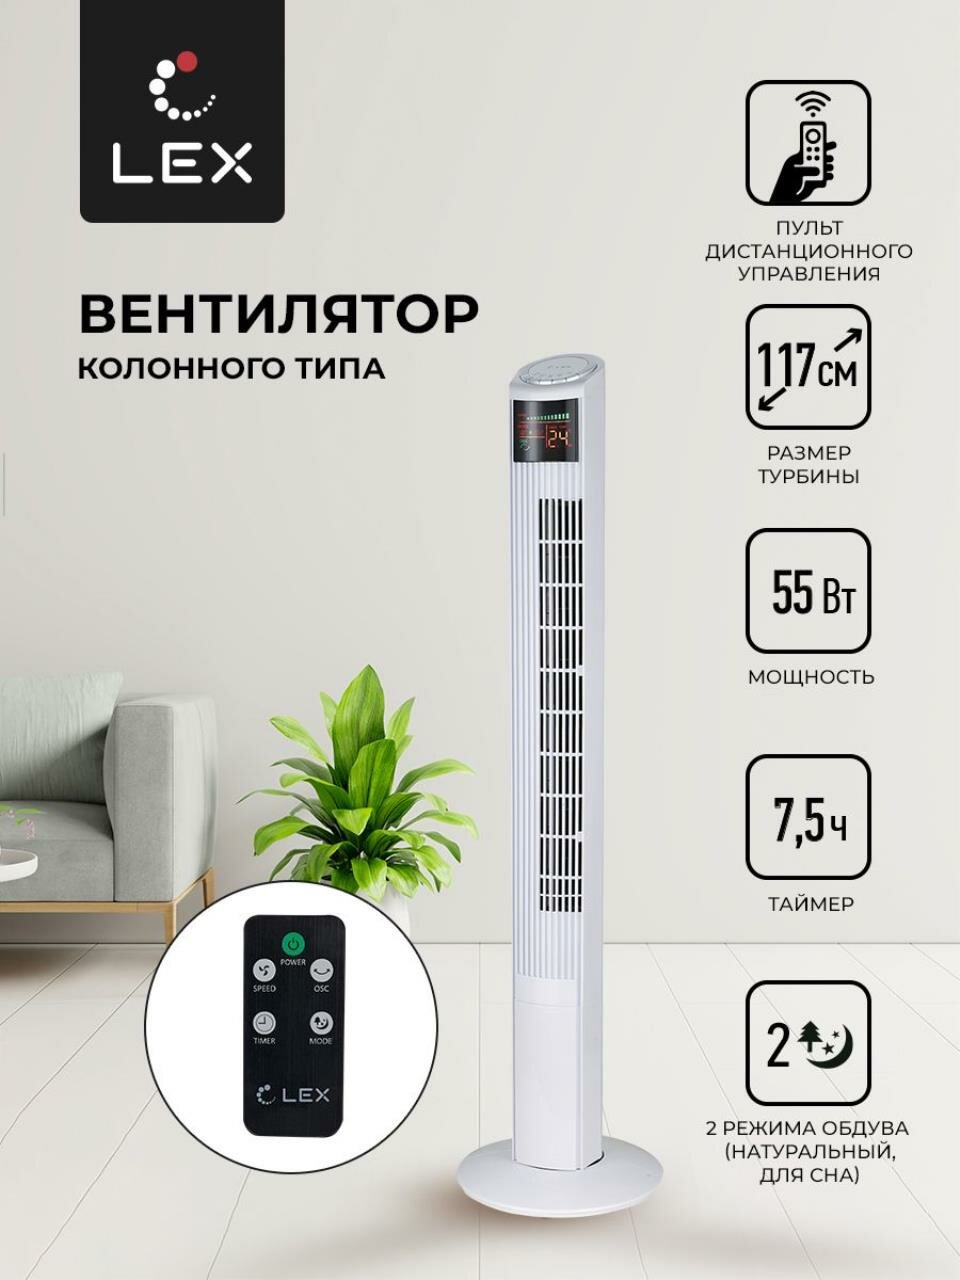 Вентилятор напольный LEX LXFC 8368, Мощность 55 Вт, размер турбины 117см ,3 скорости вращения, таймер на 7,5 часов, LED дисплей2 режима обдува, тип управления электронный, пульт Д/У.